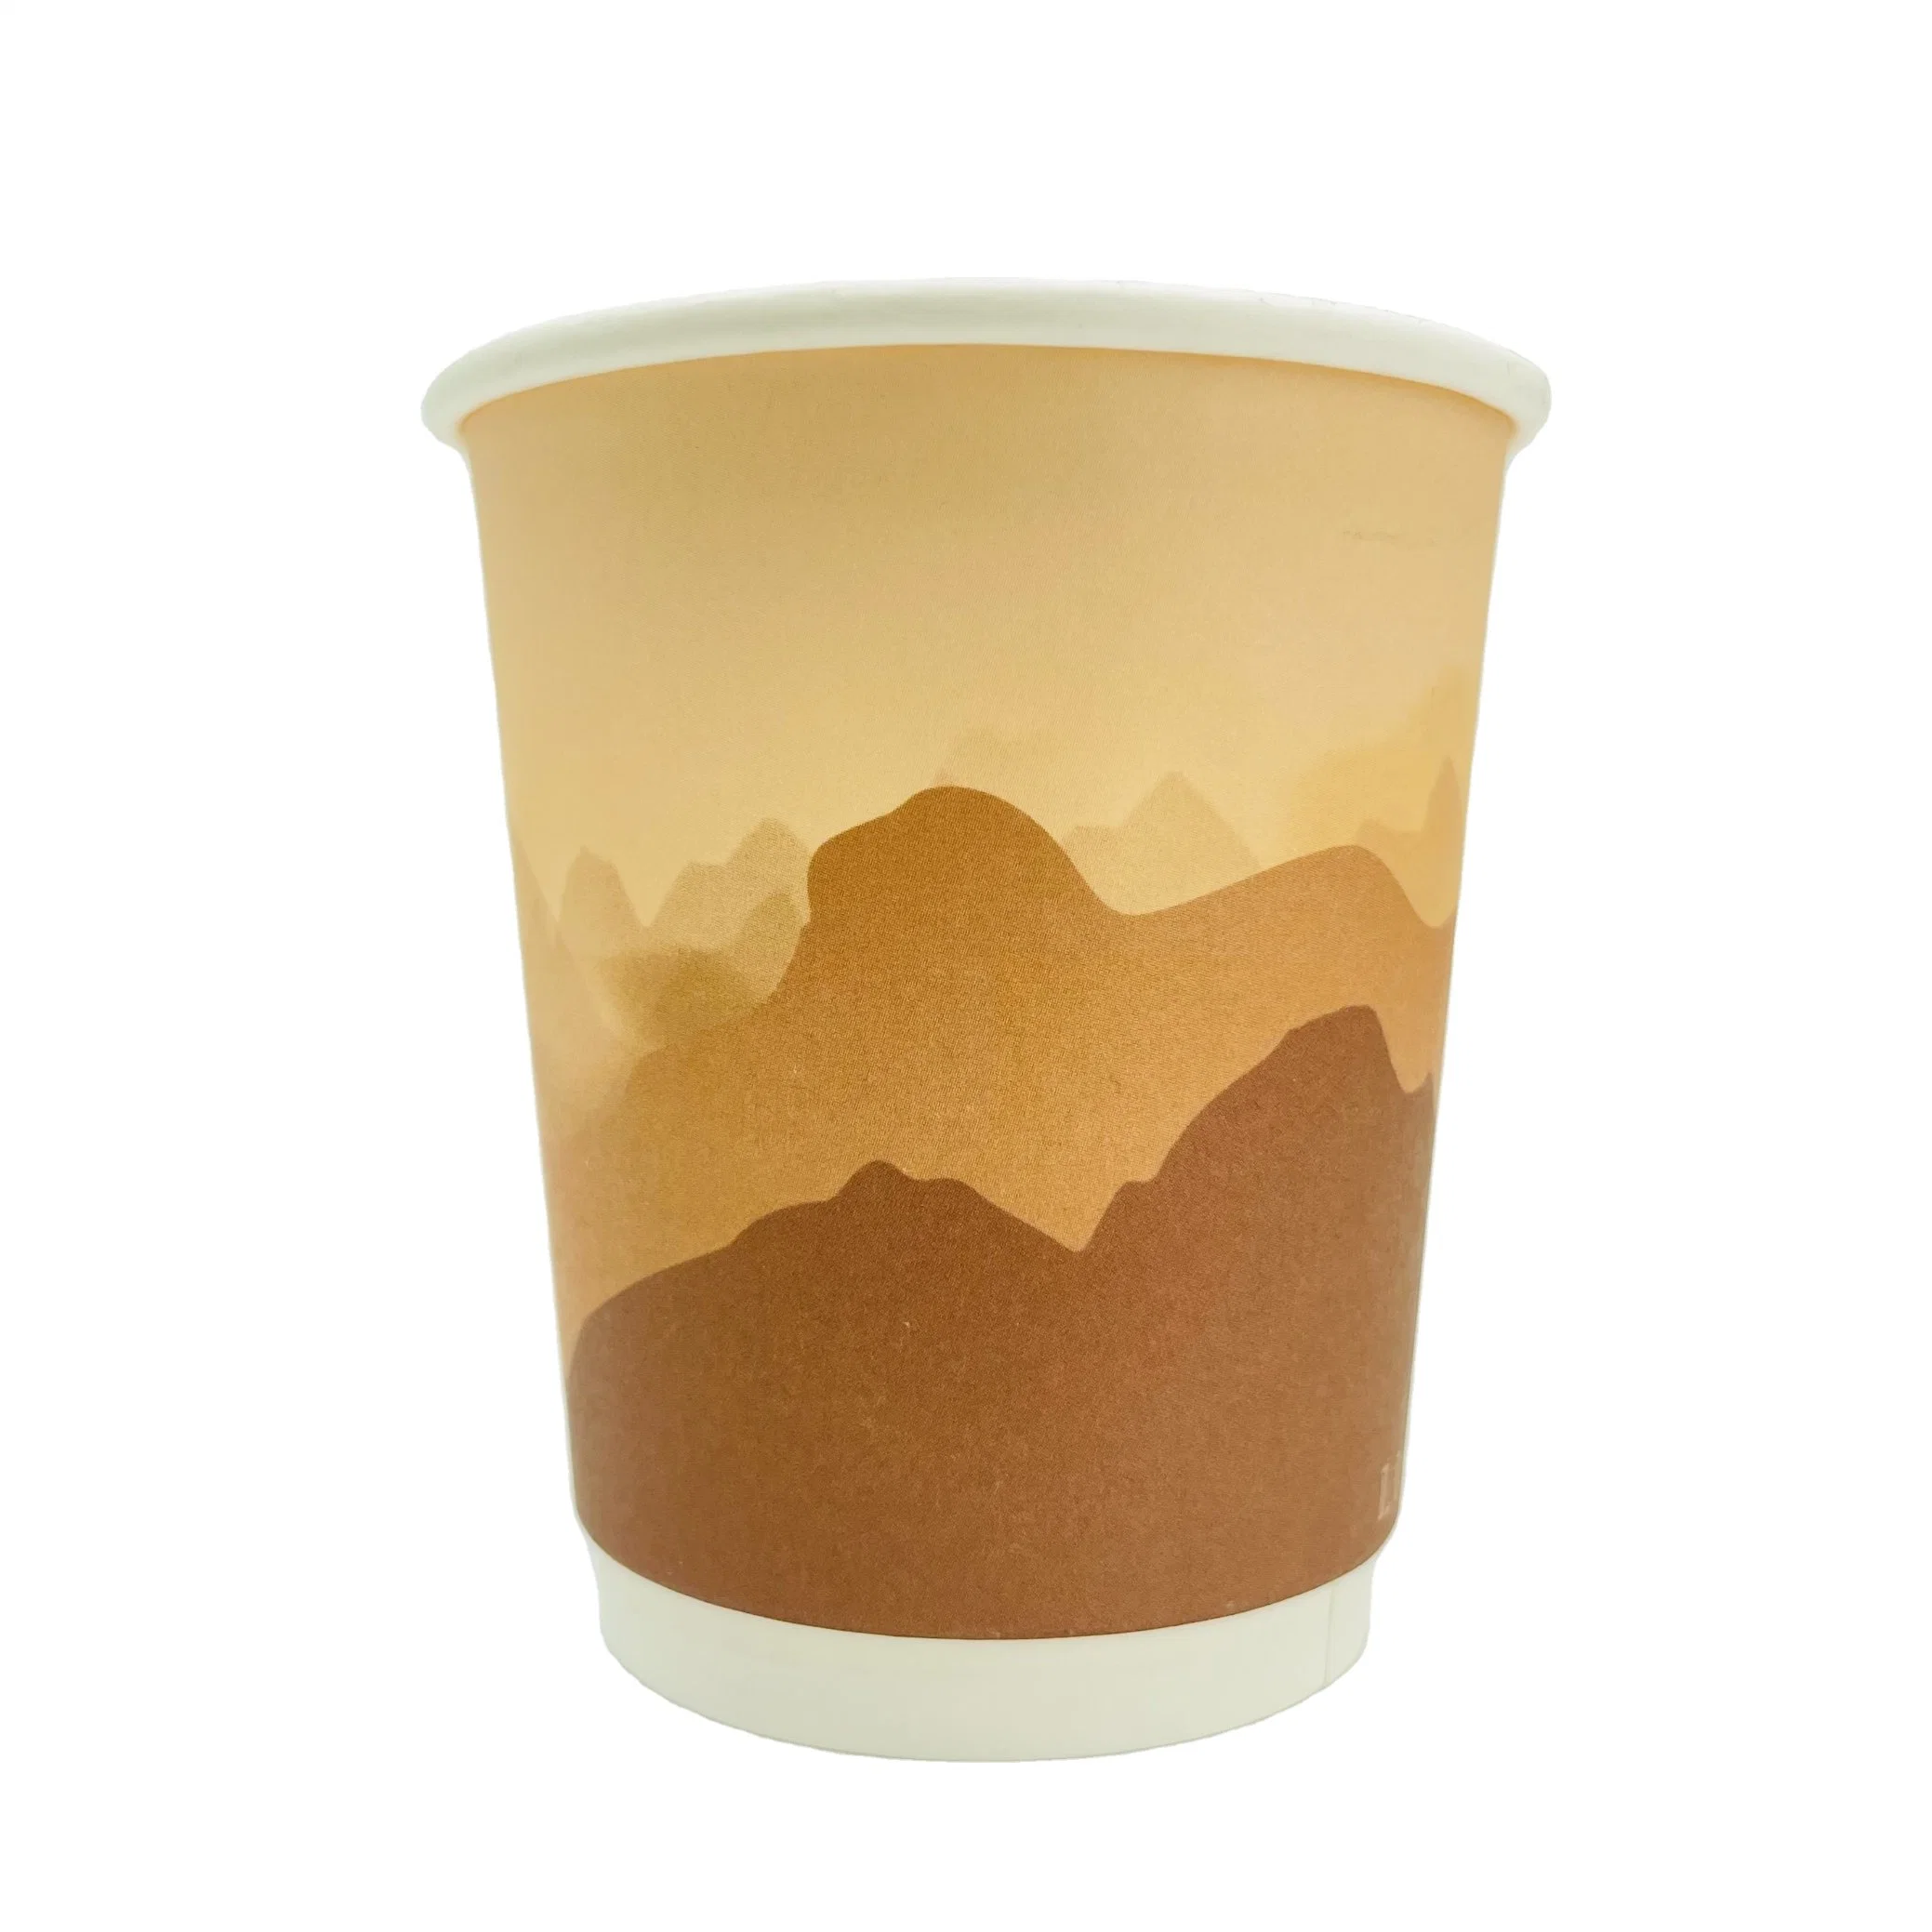 Gobelet en papier avec revêtement sans plastique, jetable, à base d'eau, doublure pour tasse à café.